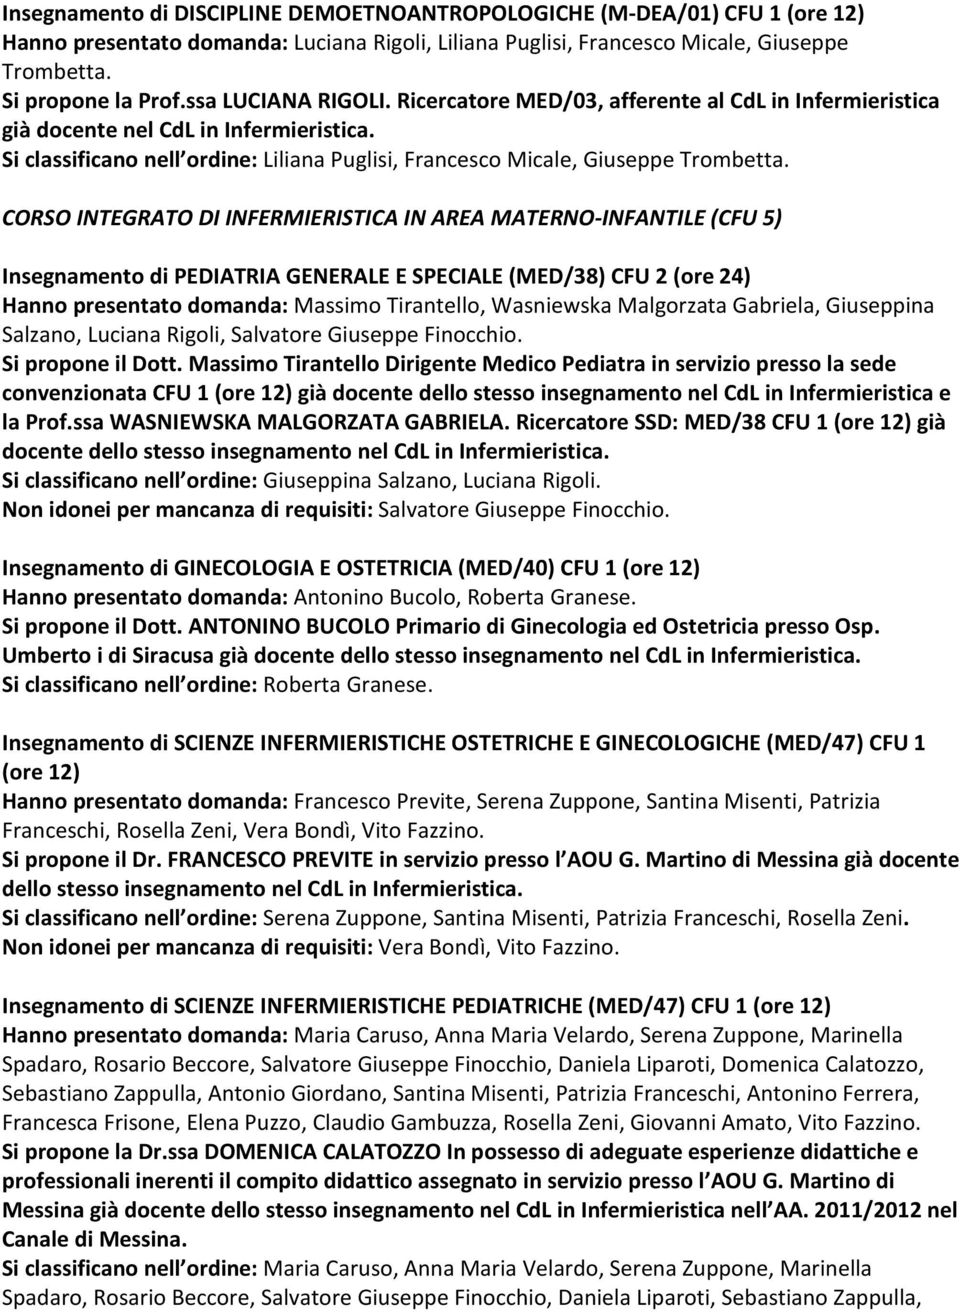 CORSO INTEGRATO DI INFERMIERISTICA IN AREA MATERNO-INFANTILE (CFU 5) Insegnamento di PEDIATRIA GENERALE E SPECIALE (MED/38) CFU 2 (ore 24) Hanno presentato domanda: Massimo Tirantello, Wasniewska